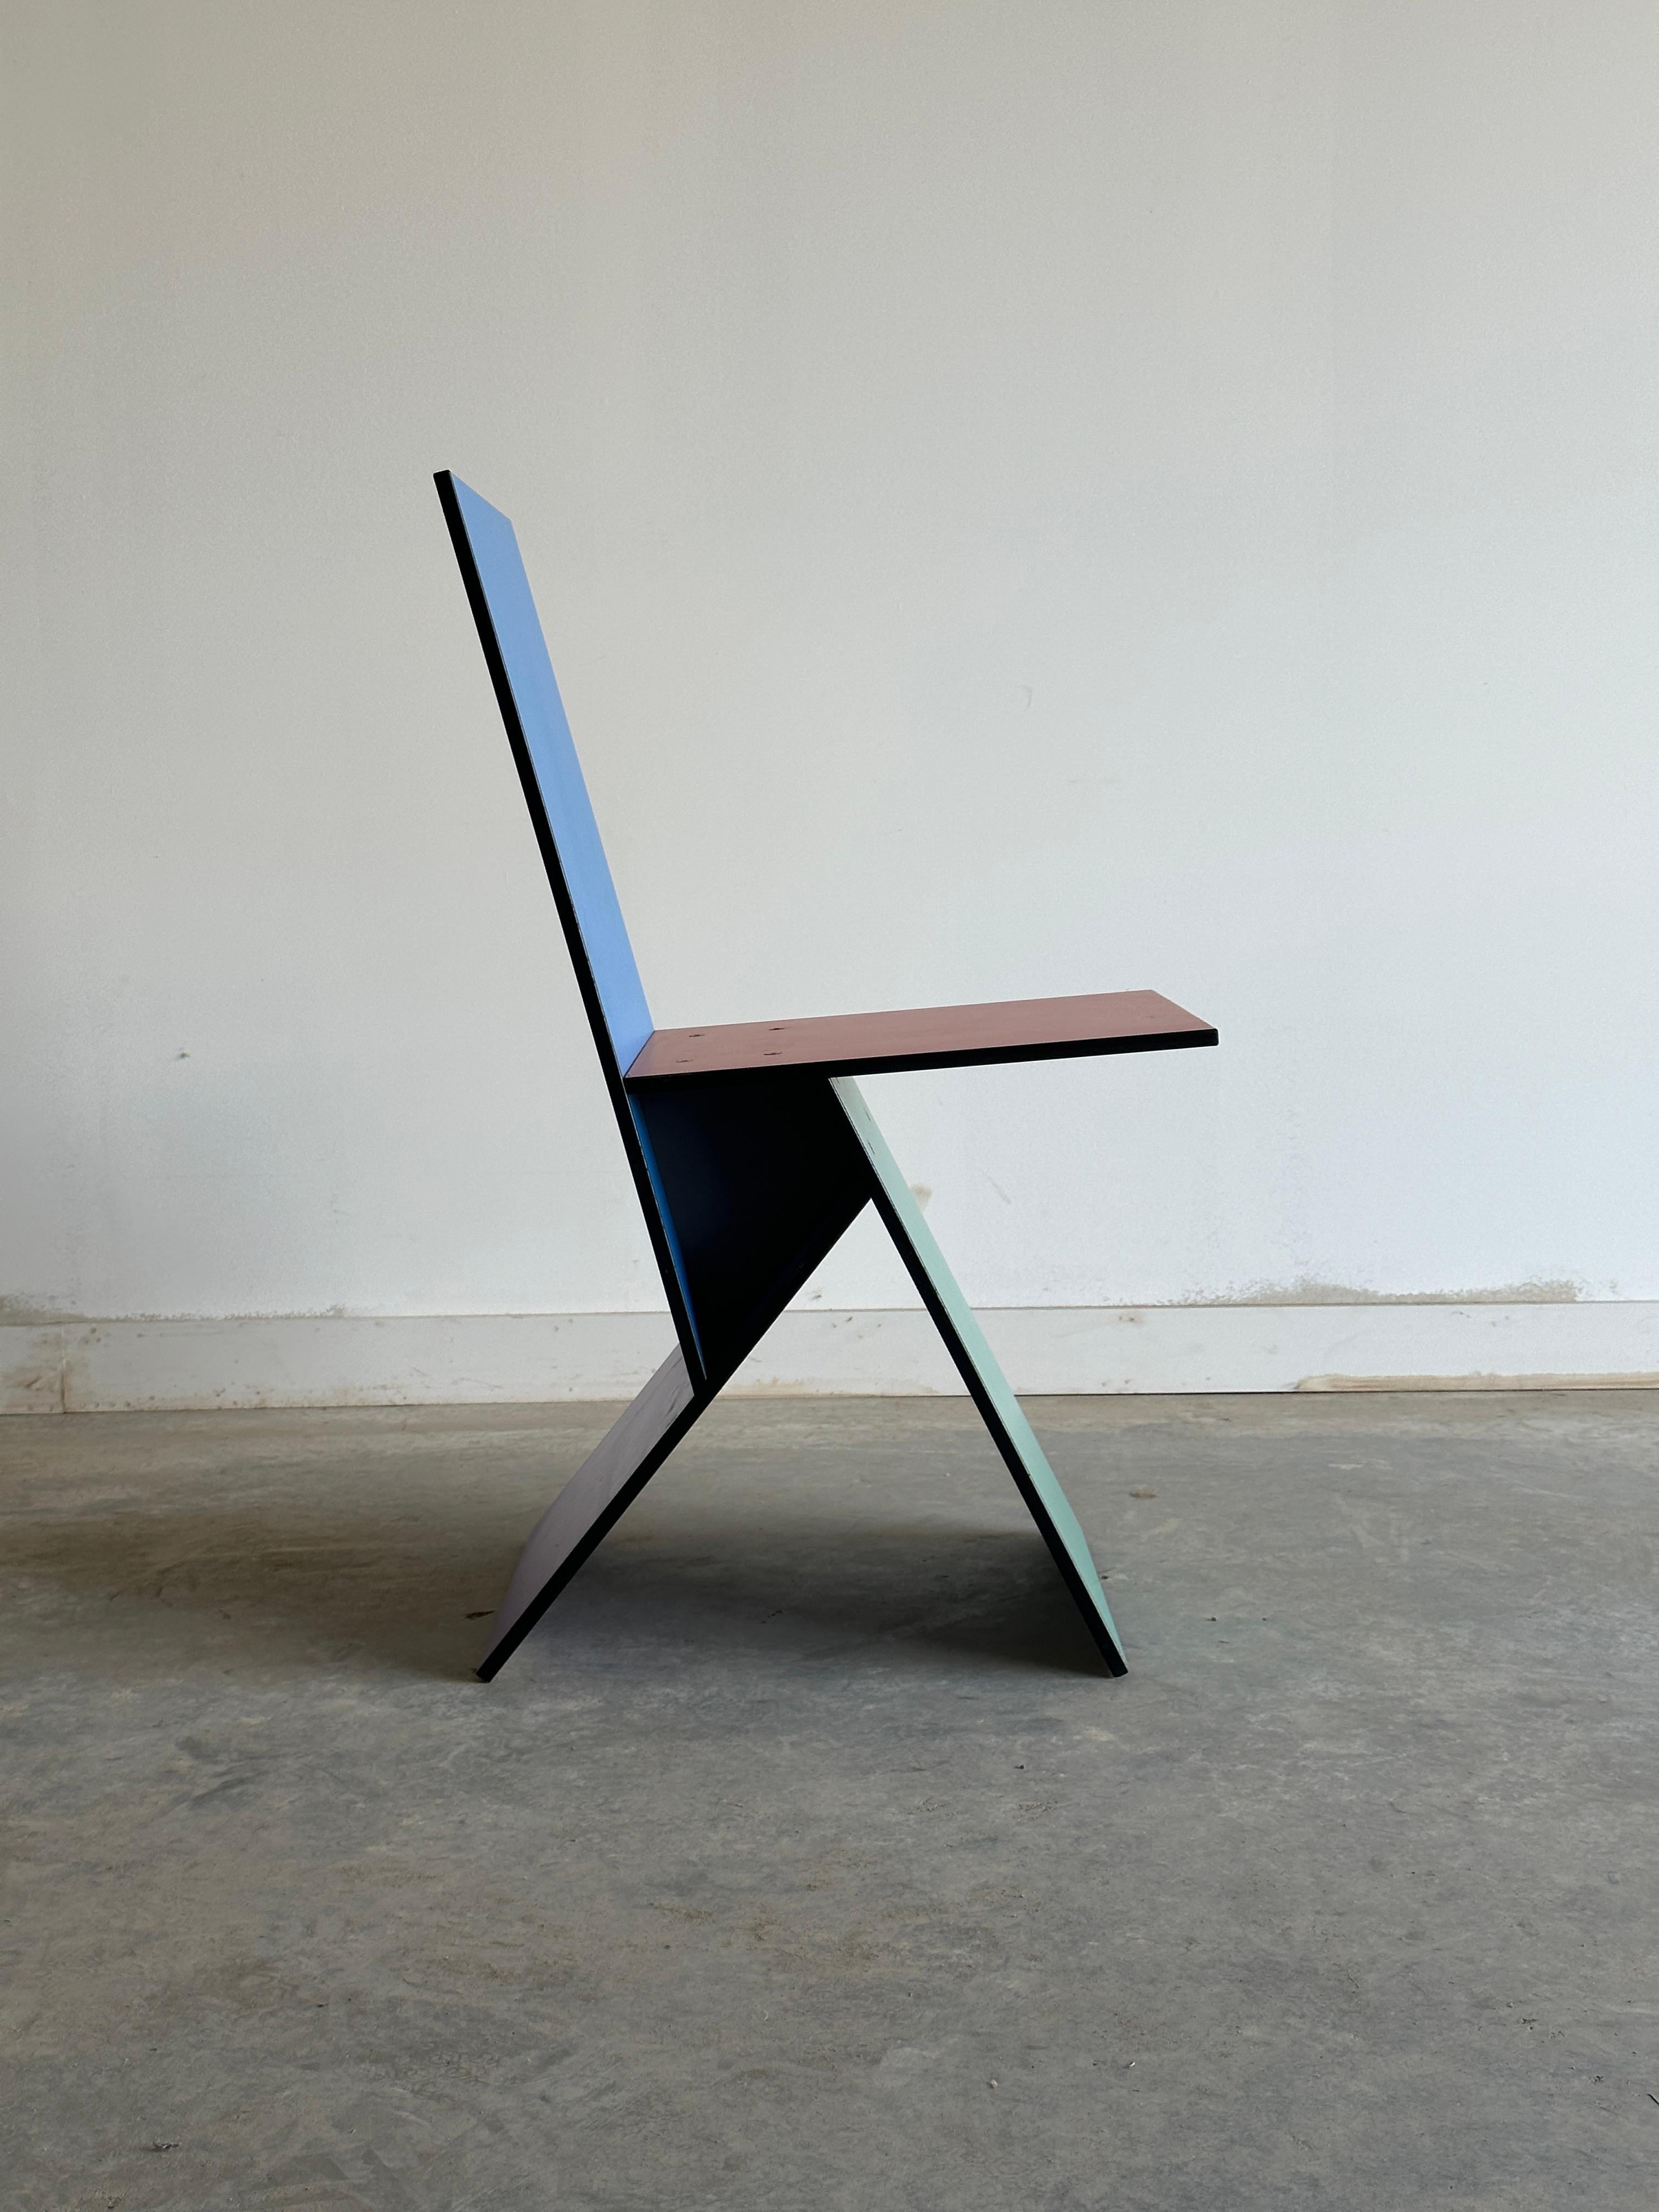 Der Stuhl Vilbert von Verner Panton ist ein farbenfrohes und geometrisches Möbelstück, das den innovativen und verspielten Stil des Designers widerspiegelt. Es besteht aus vier MDF-Profilen, die mit Melamin beschichtet sind, wodurch eine haltbare